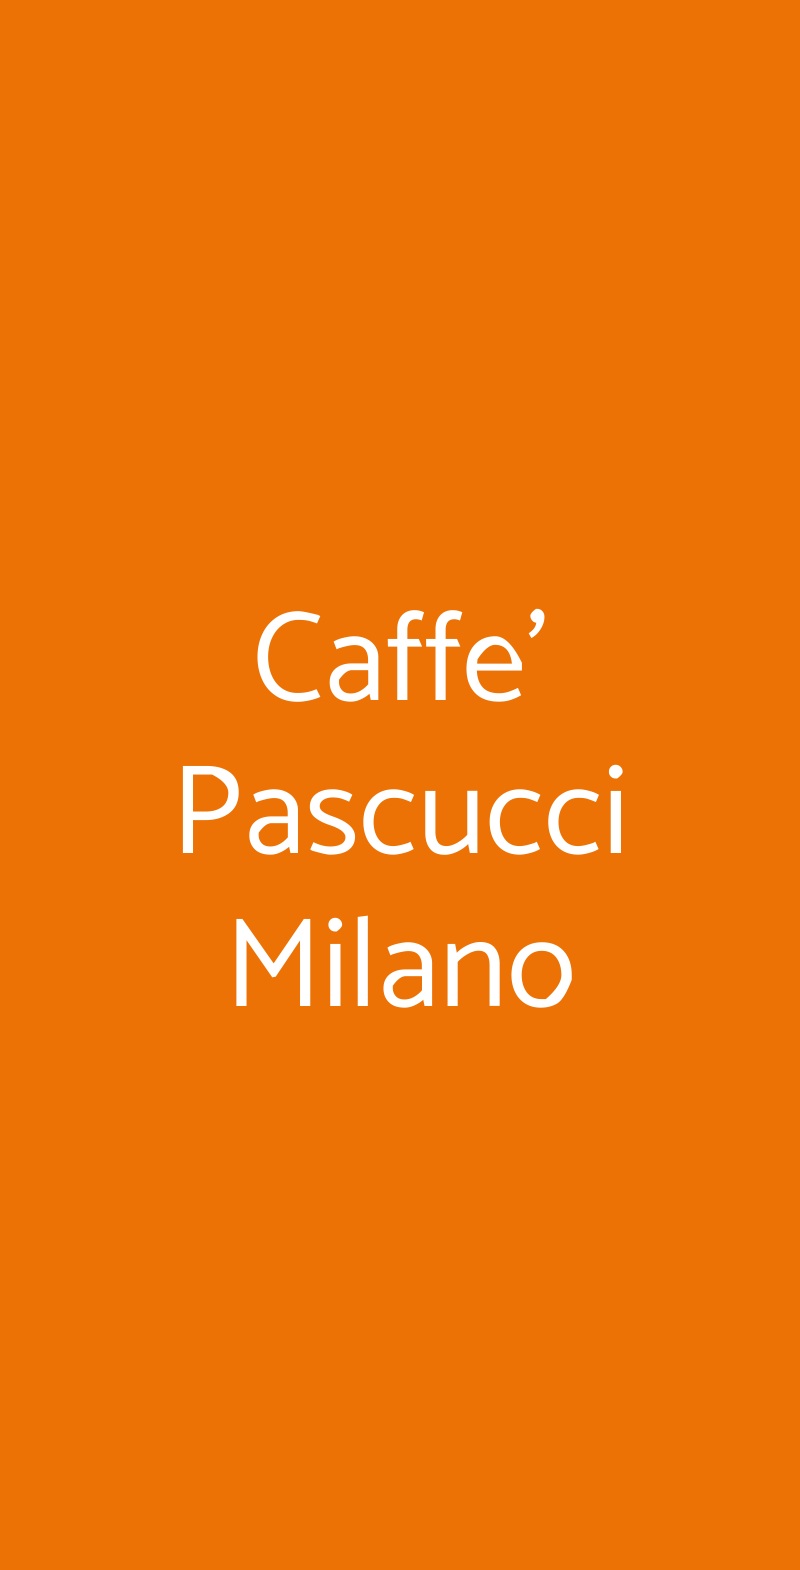 Caffe' Pascucci Milano Milano menù 1 pagina